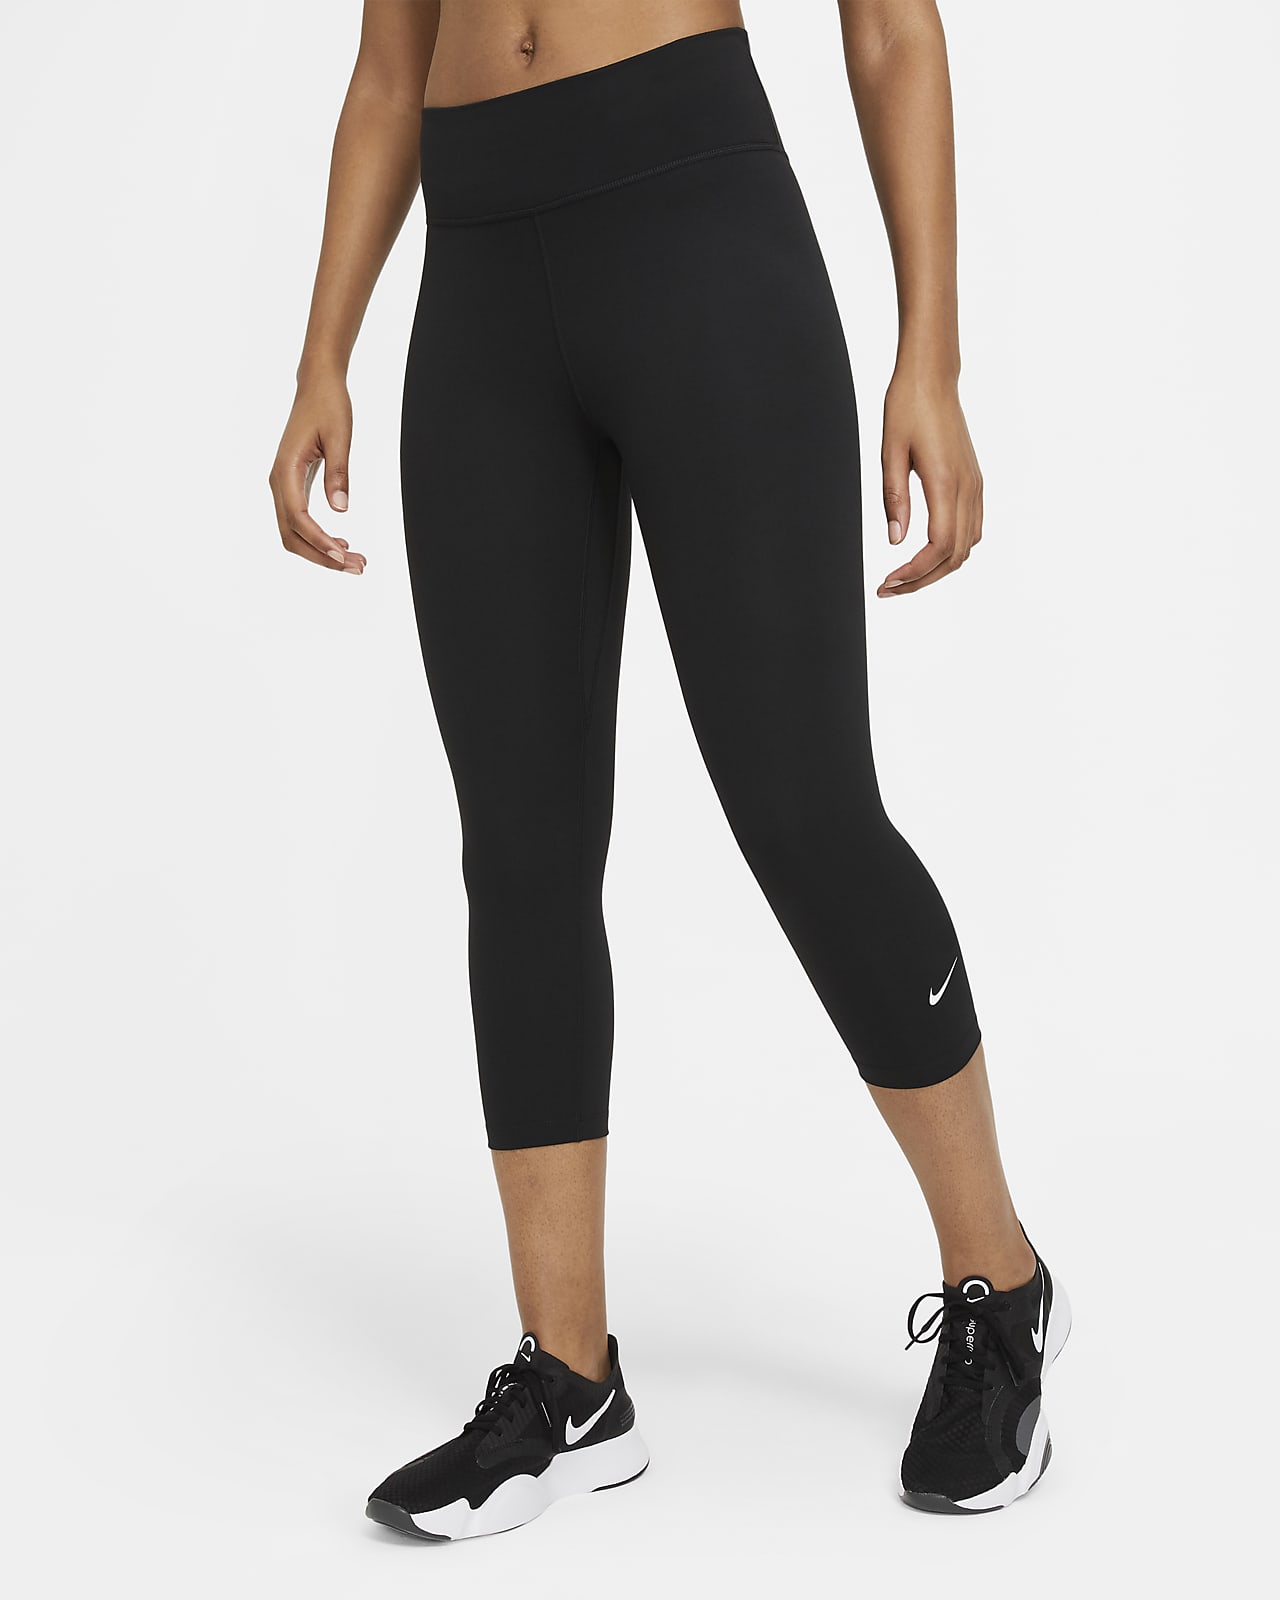 Damskie legginsy typu capri ze średnim stanem Nike One. Nike PL